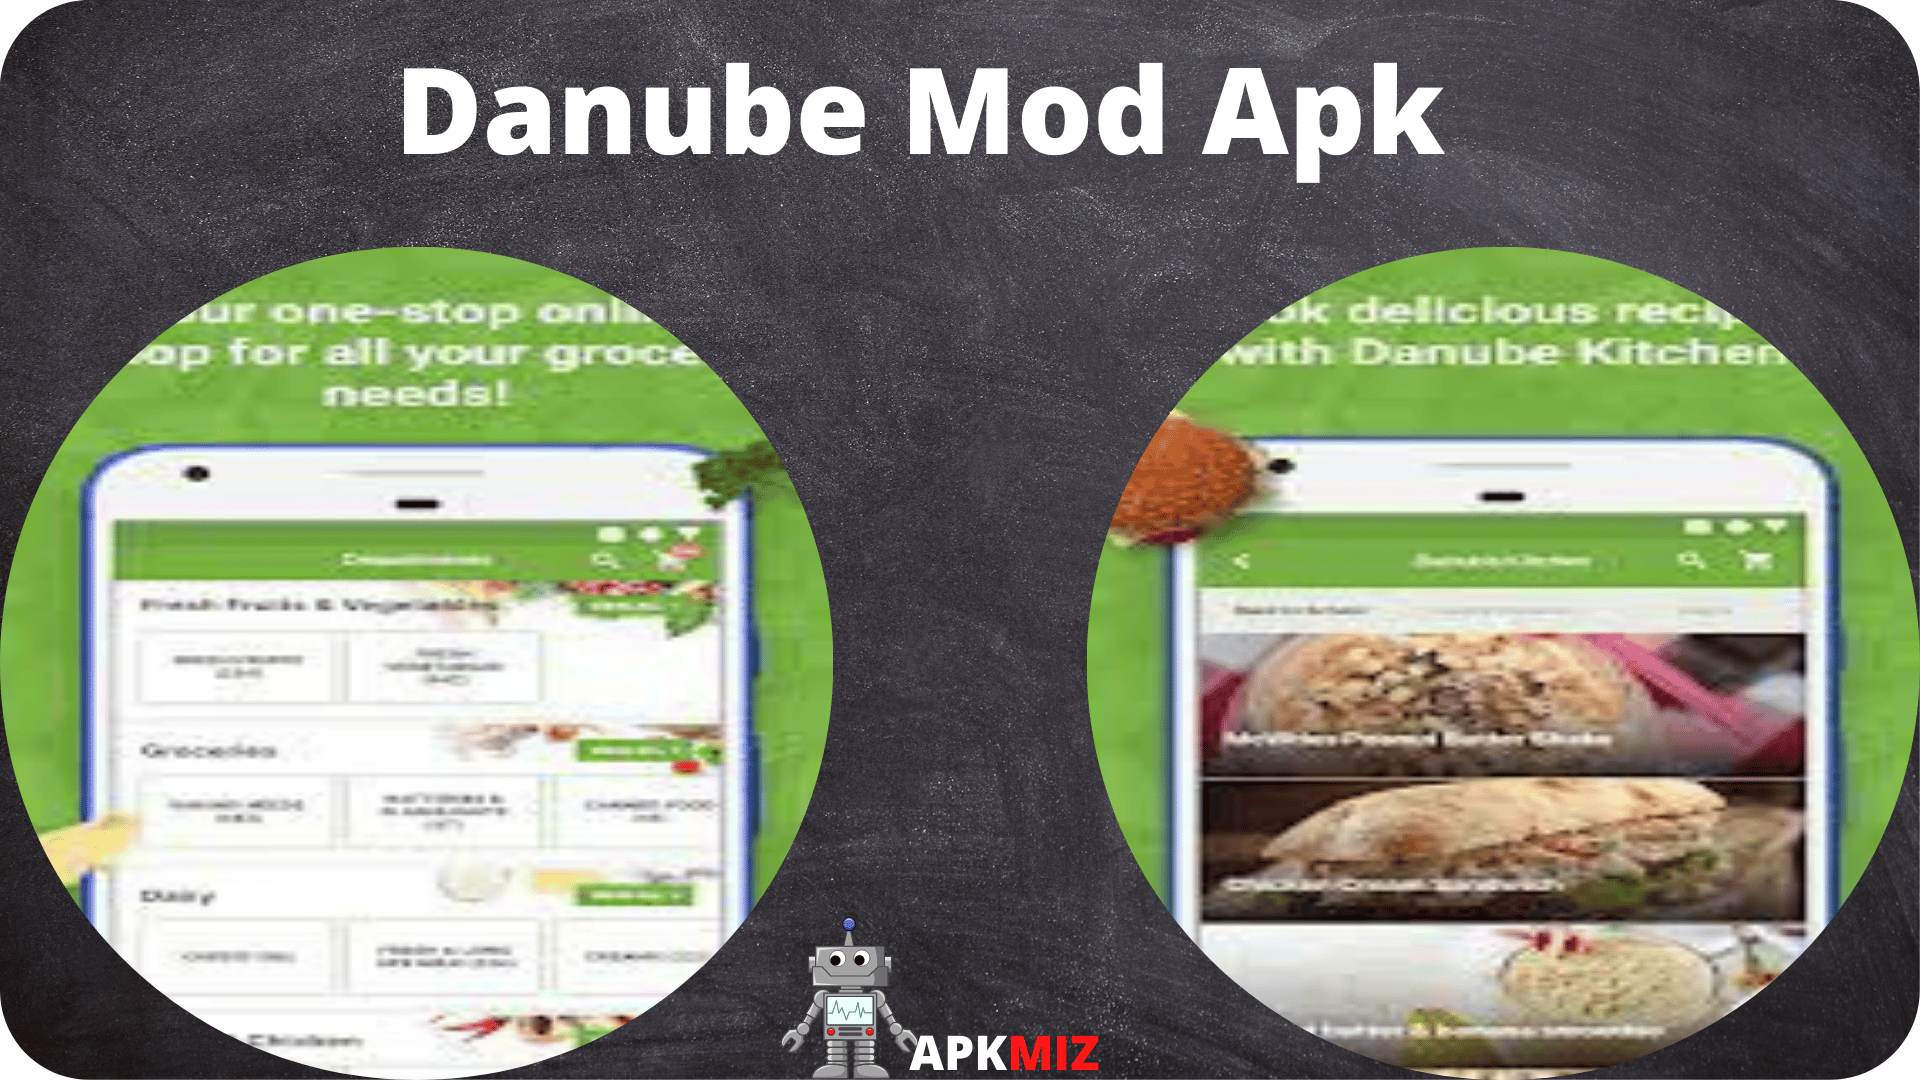 Danube Mod Apk